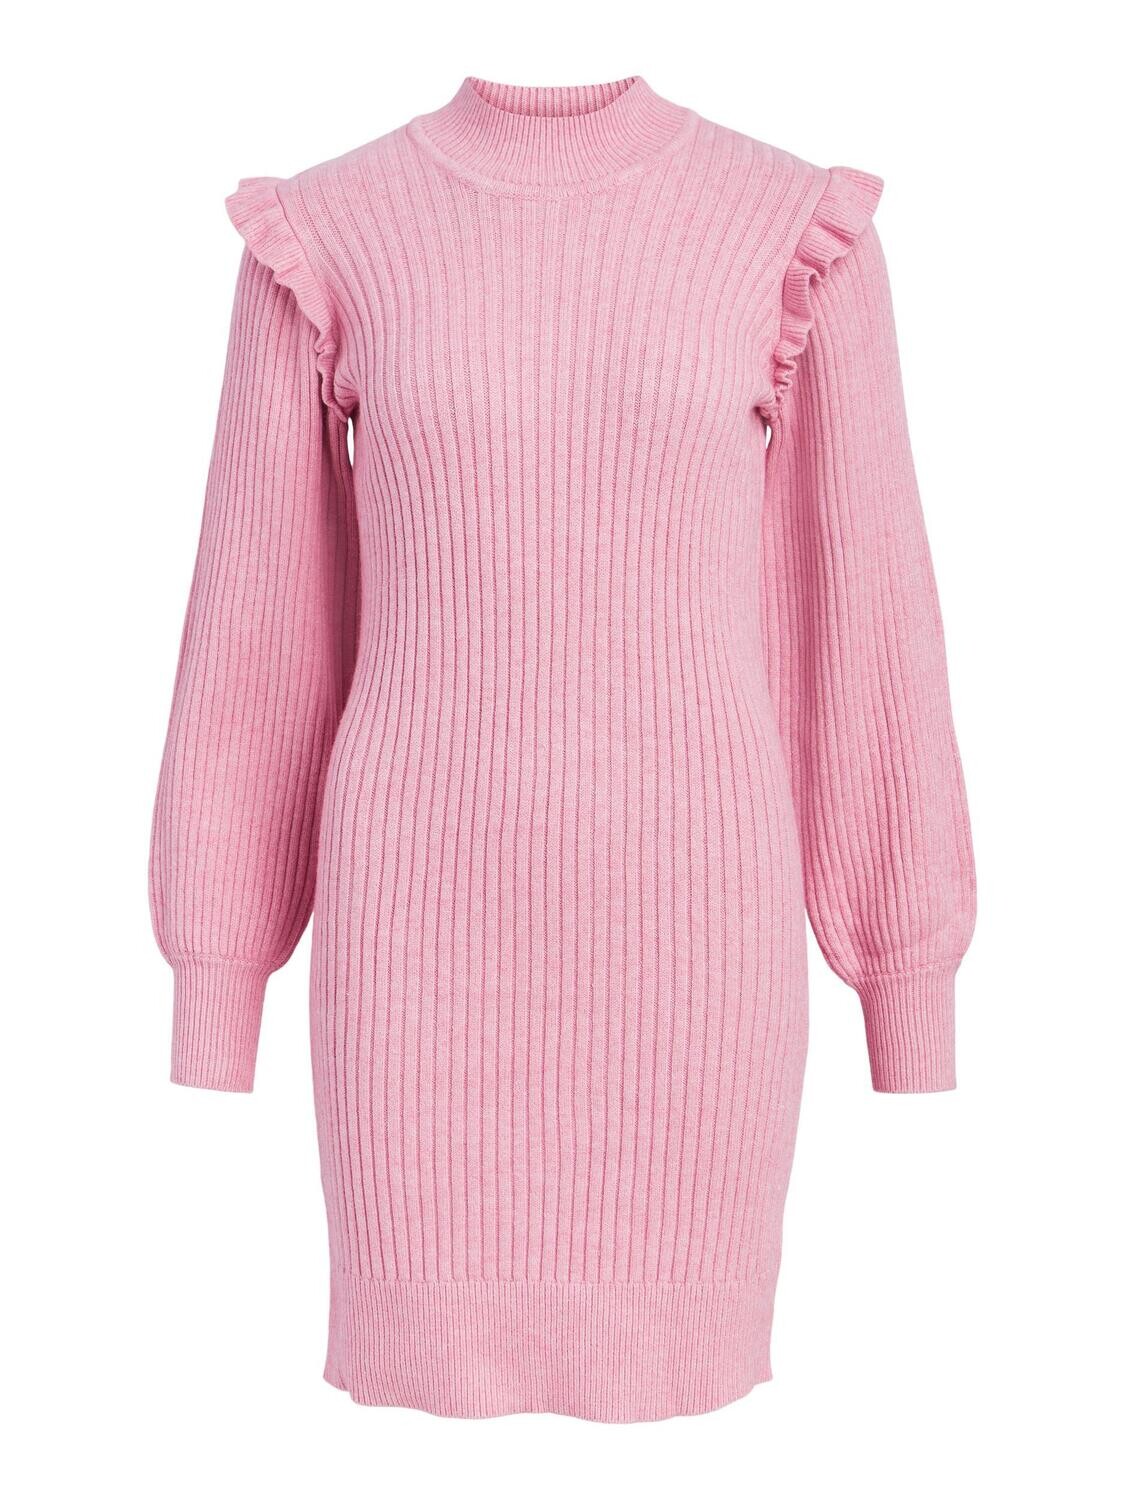 OBJDIVA KNIT DRESS 123 DIV Begonia Pink